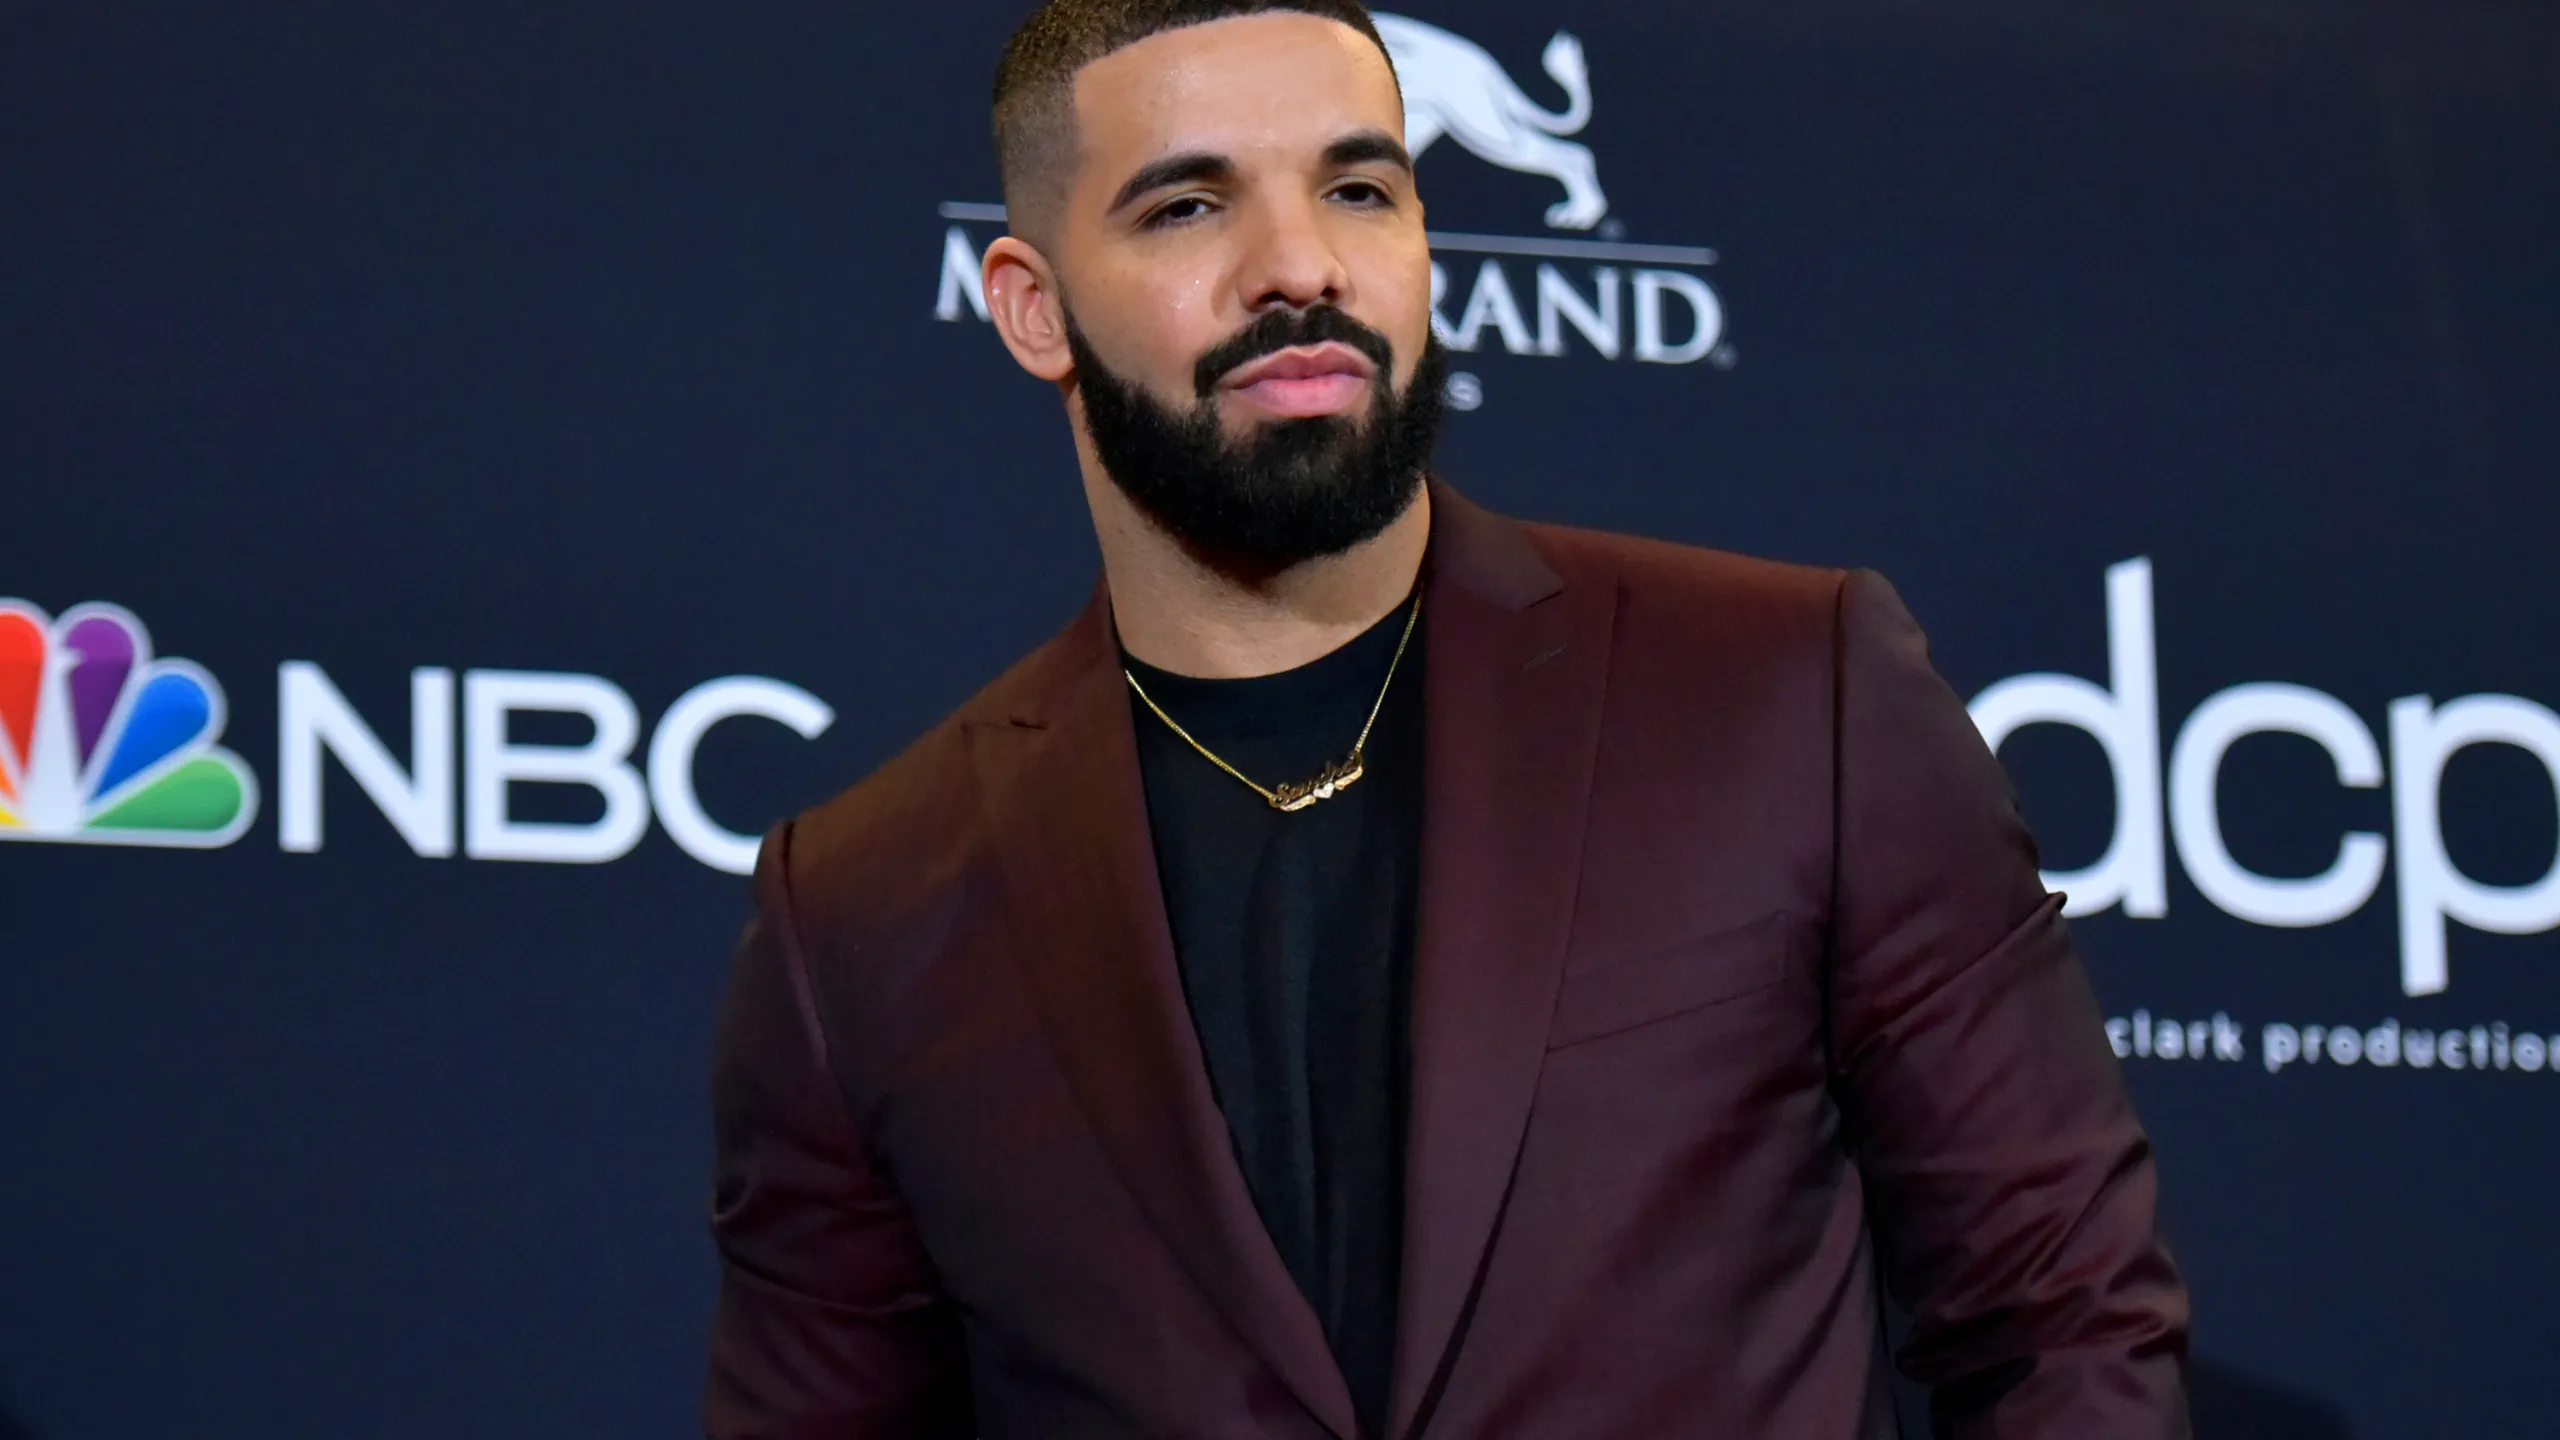 Drake wearing a burgundy suit